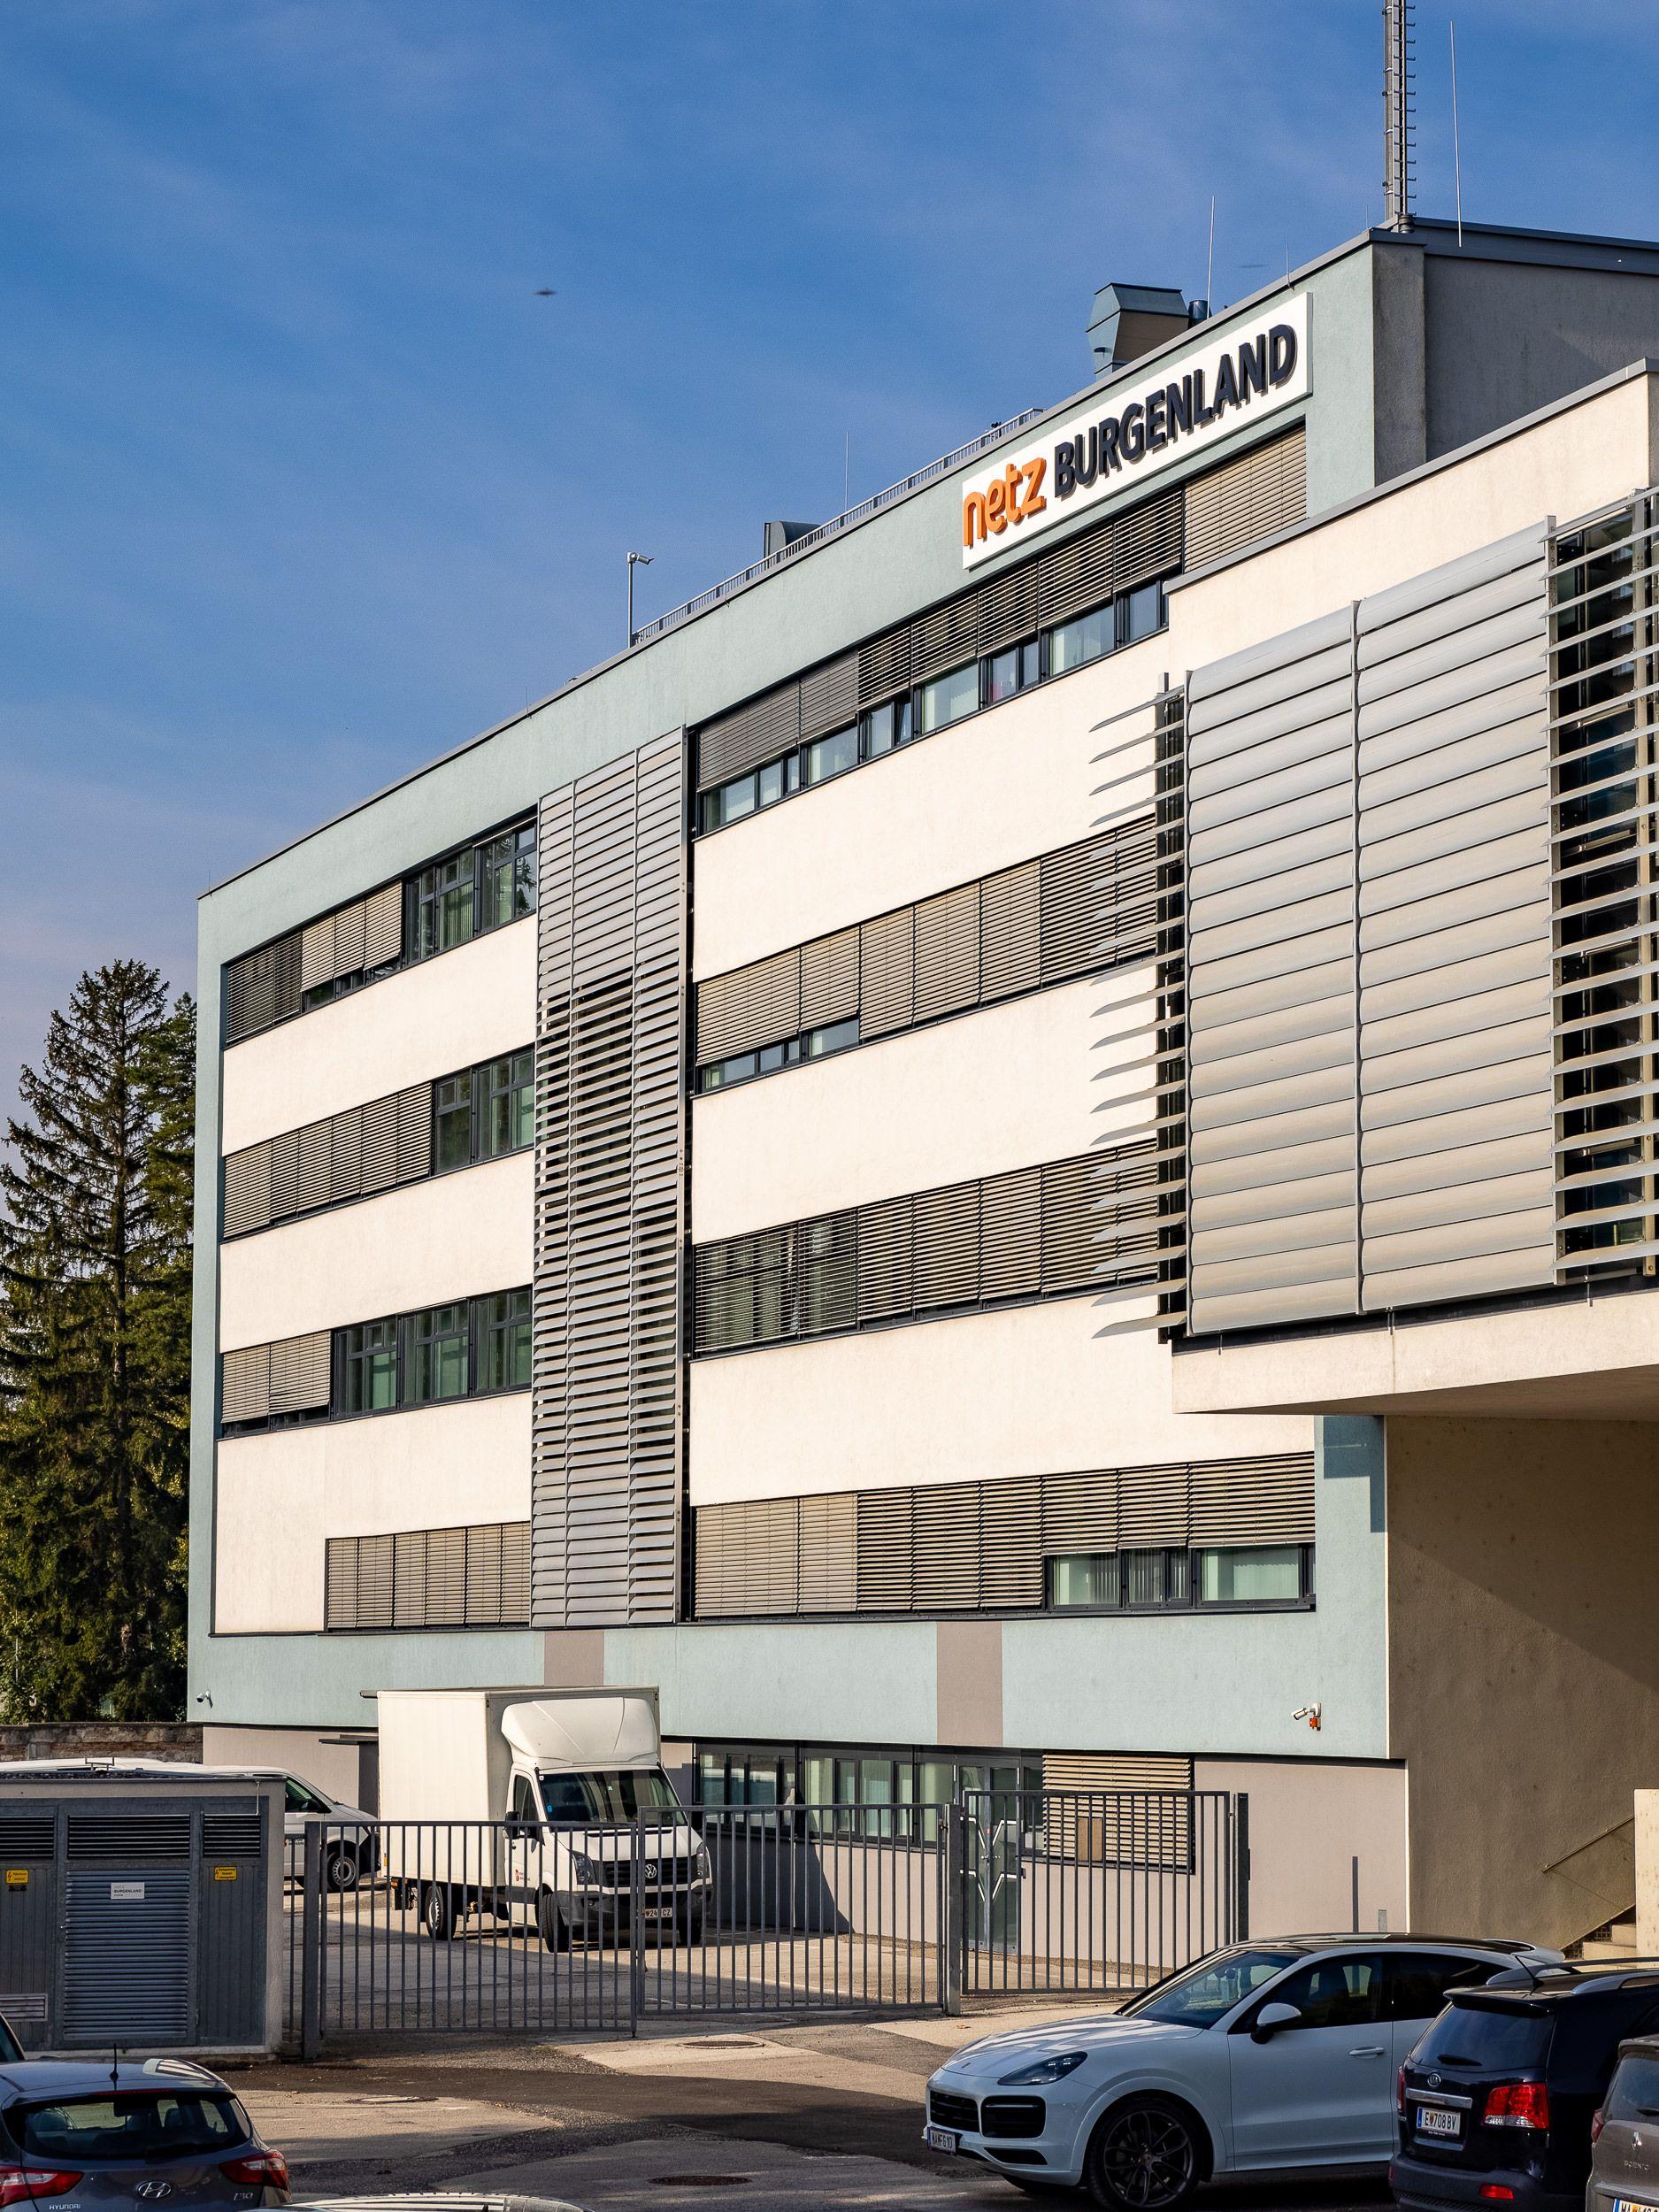 Das Firmengebäude von Netz Burgenland mit Firmenlogo, aufgenommen bei Tageslicht.